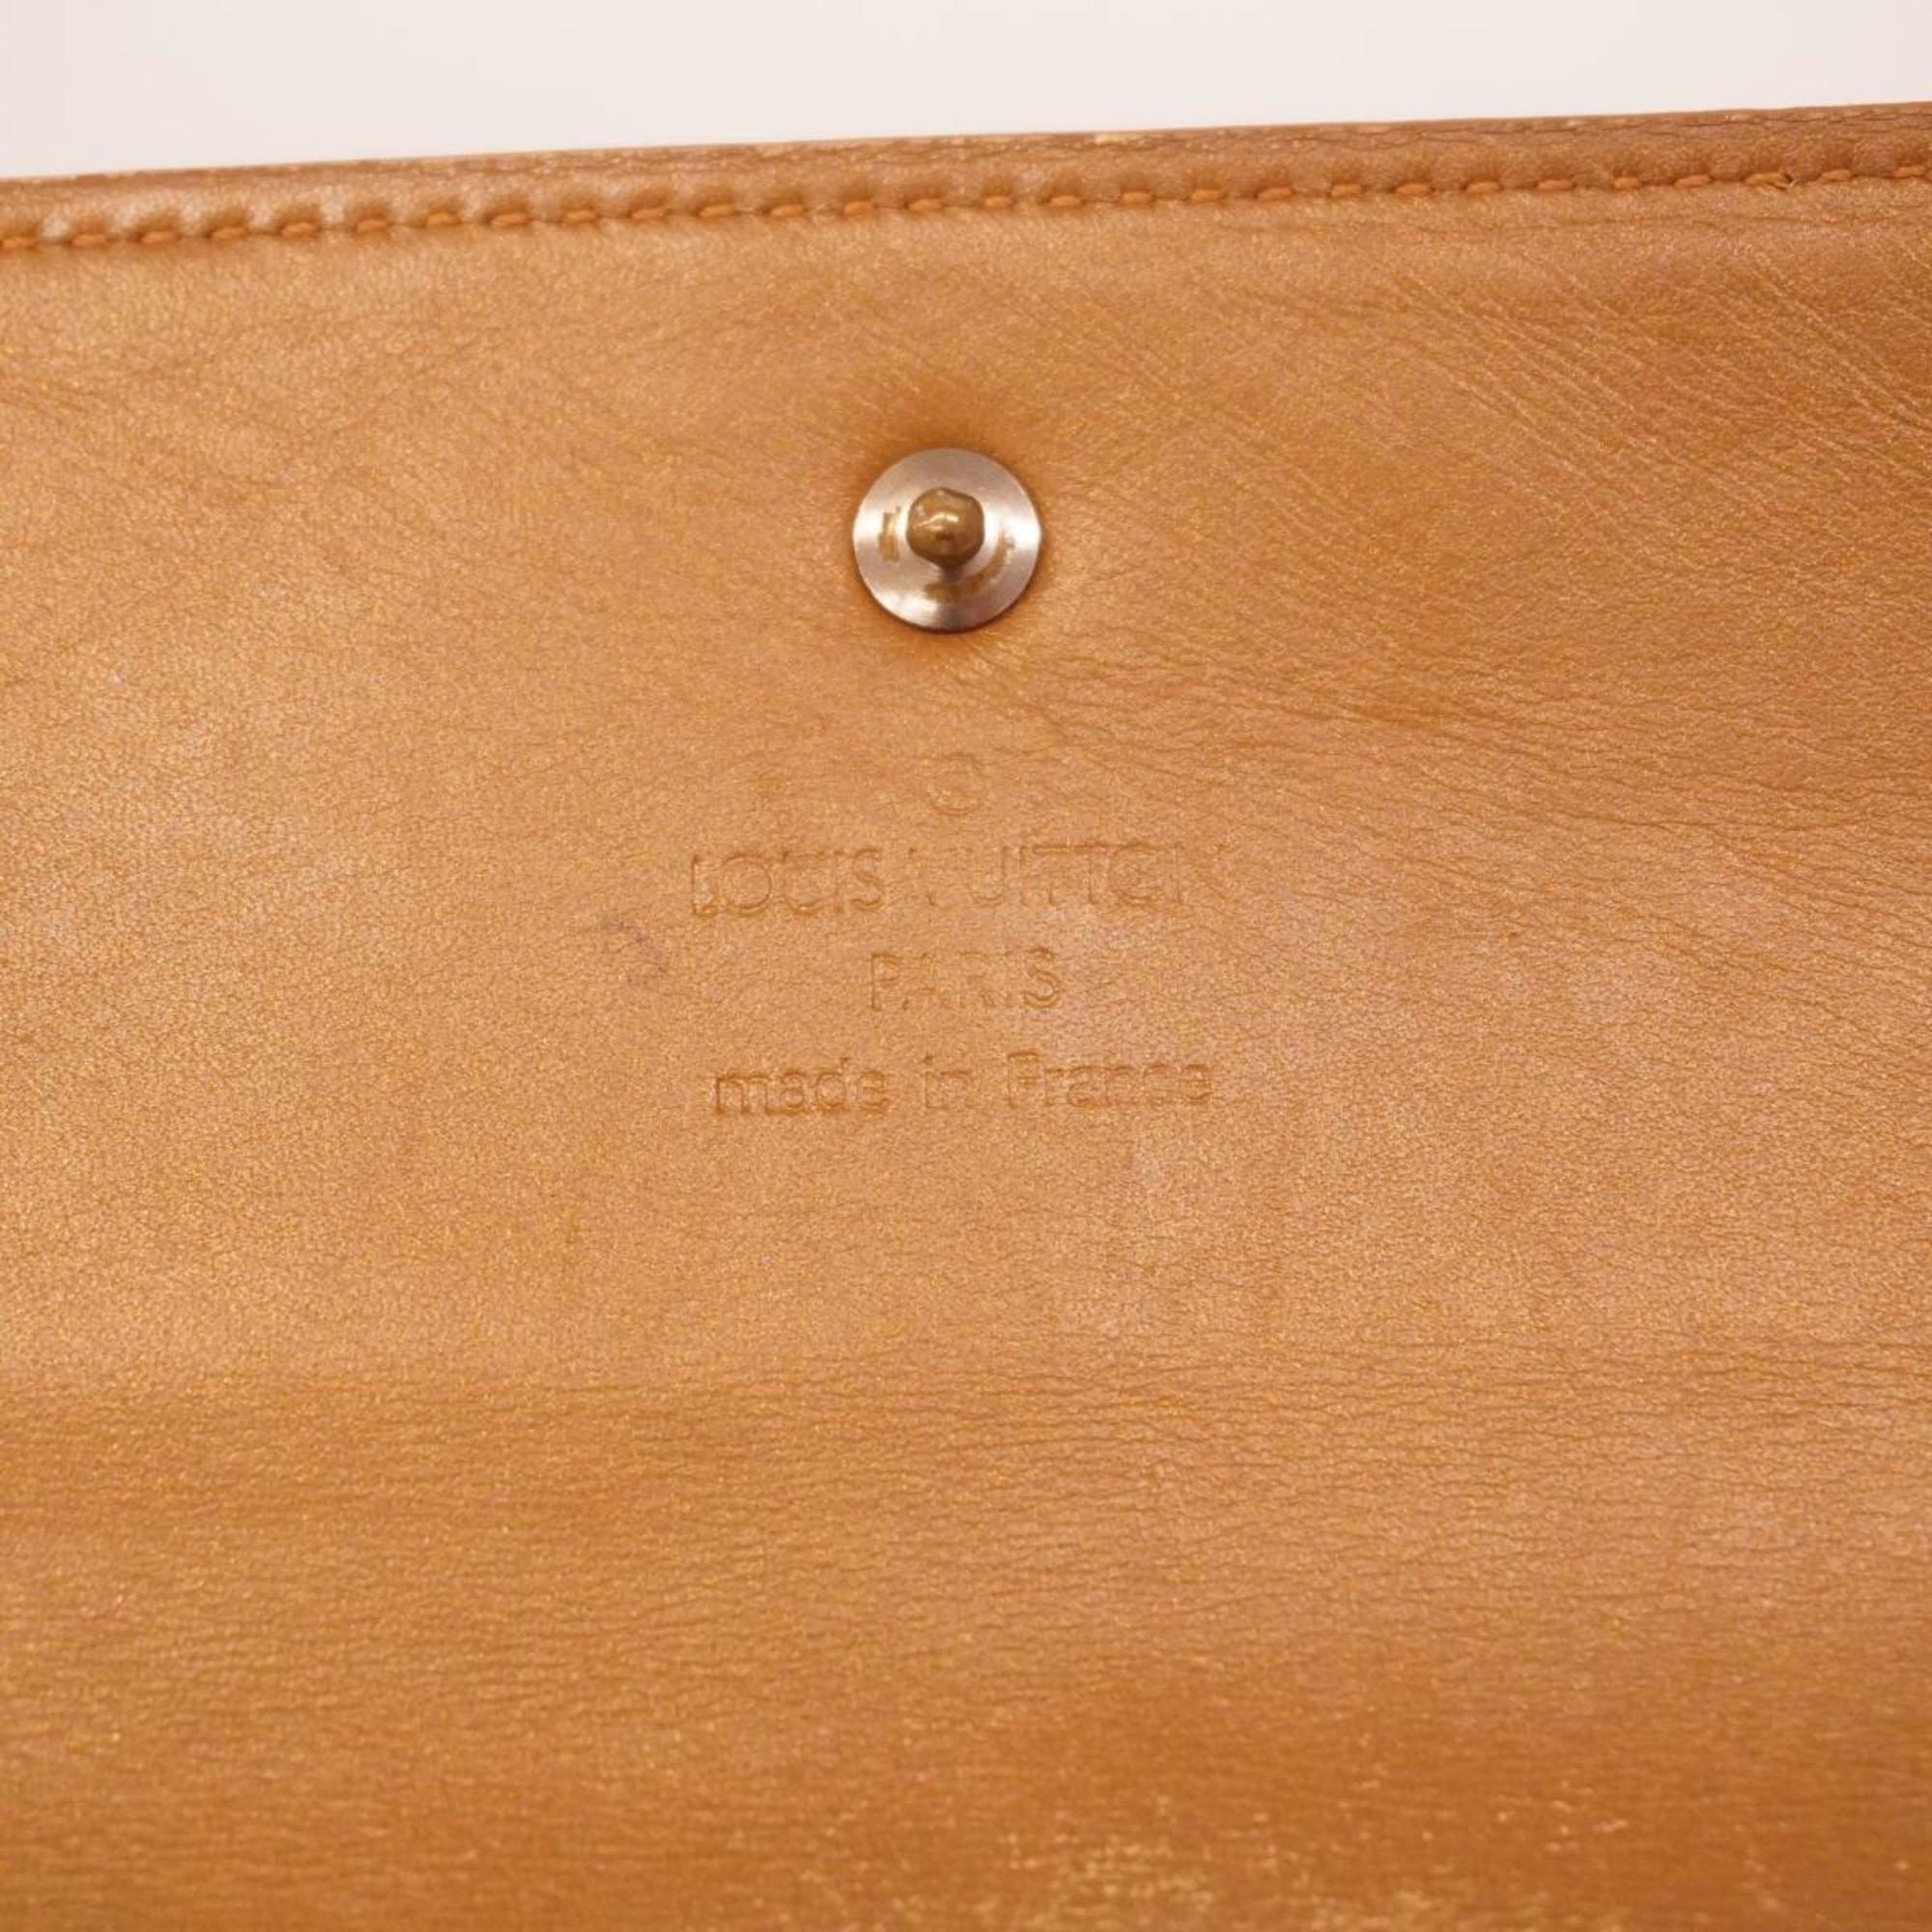 ルイ・ヴィトン(Louis Vuitton) ルイ・ヴィトン 長財布 モノグラムマット ポルトトレゾールインターナショナル M65107 アンブレレディース